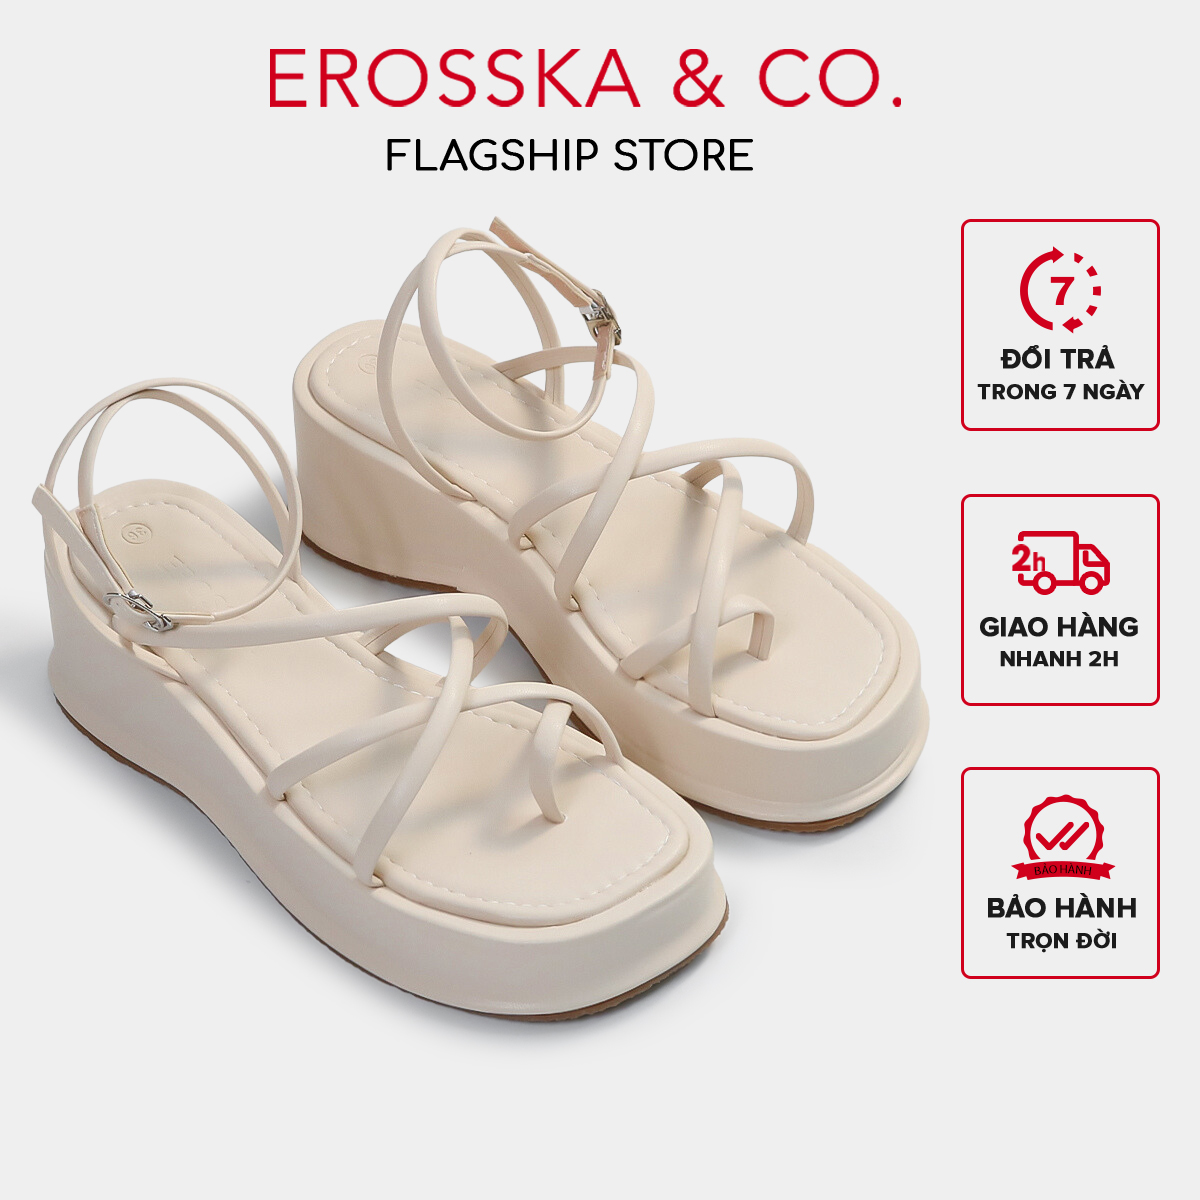 Erosska - Sandal đế xuồng dây quai mảnh kiểu dáng xỏ ngón màu kem cao 5cm - SB001 (Version 2)